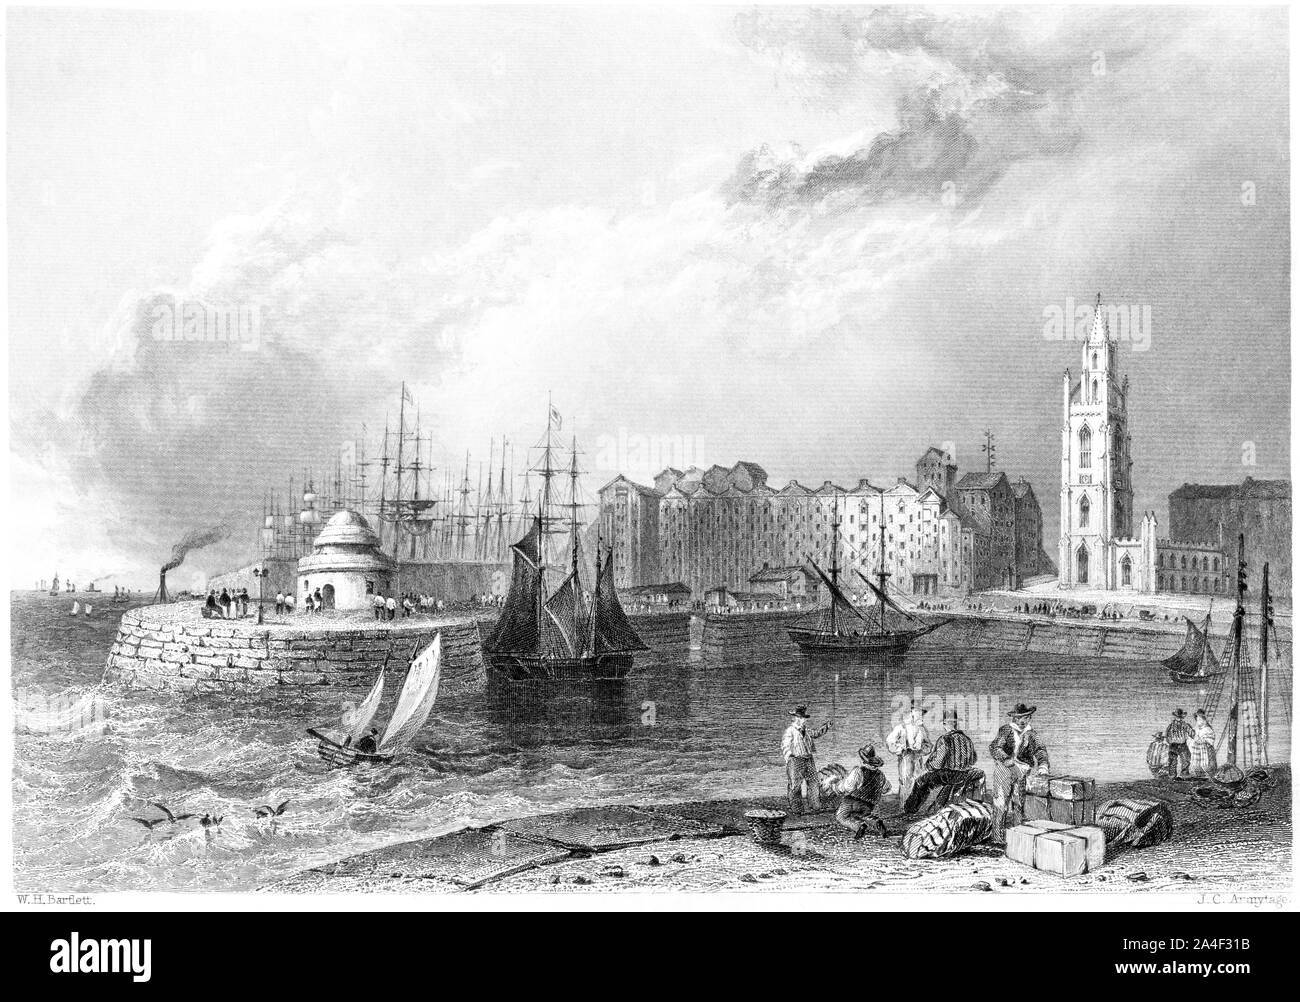 Ein Kupferstich von St Nicholas' Church, Liverpool von St George's Becken gescannt und in hoher Auflösung aus einem Buch im Jahre 1842 gedruckt. Glaubten copyright frei. Stockfoto